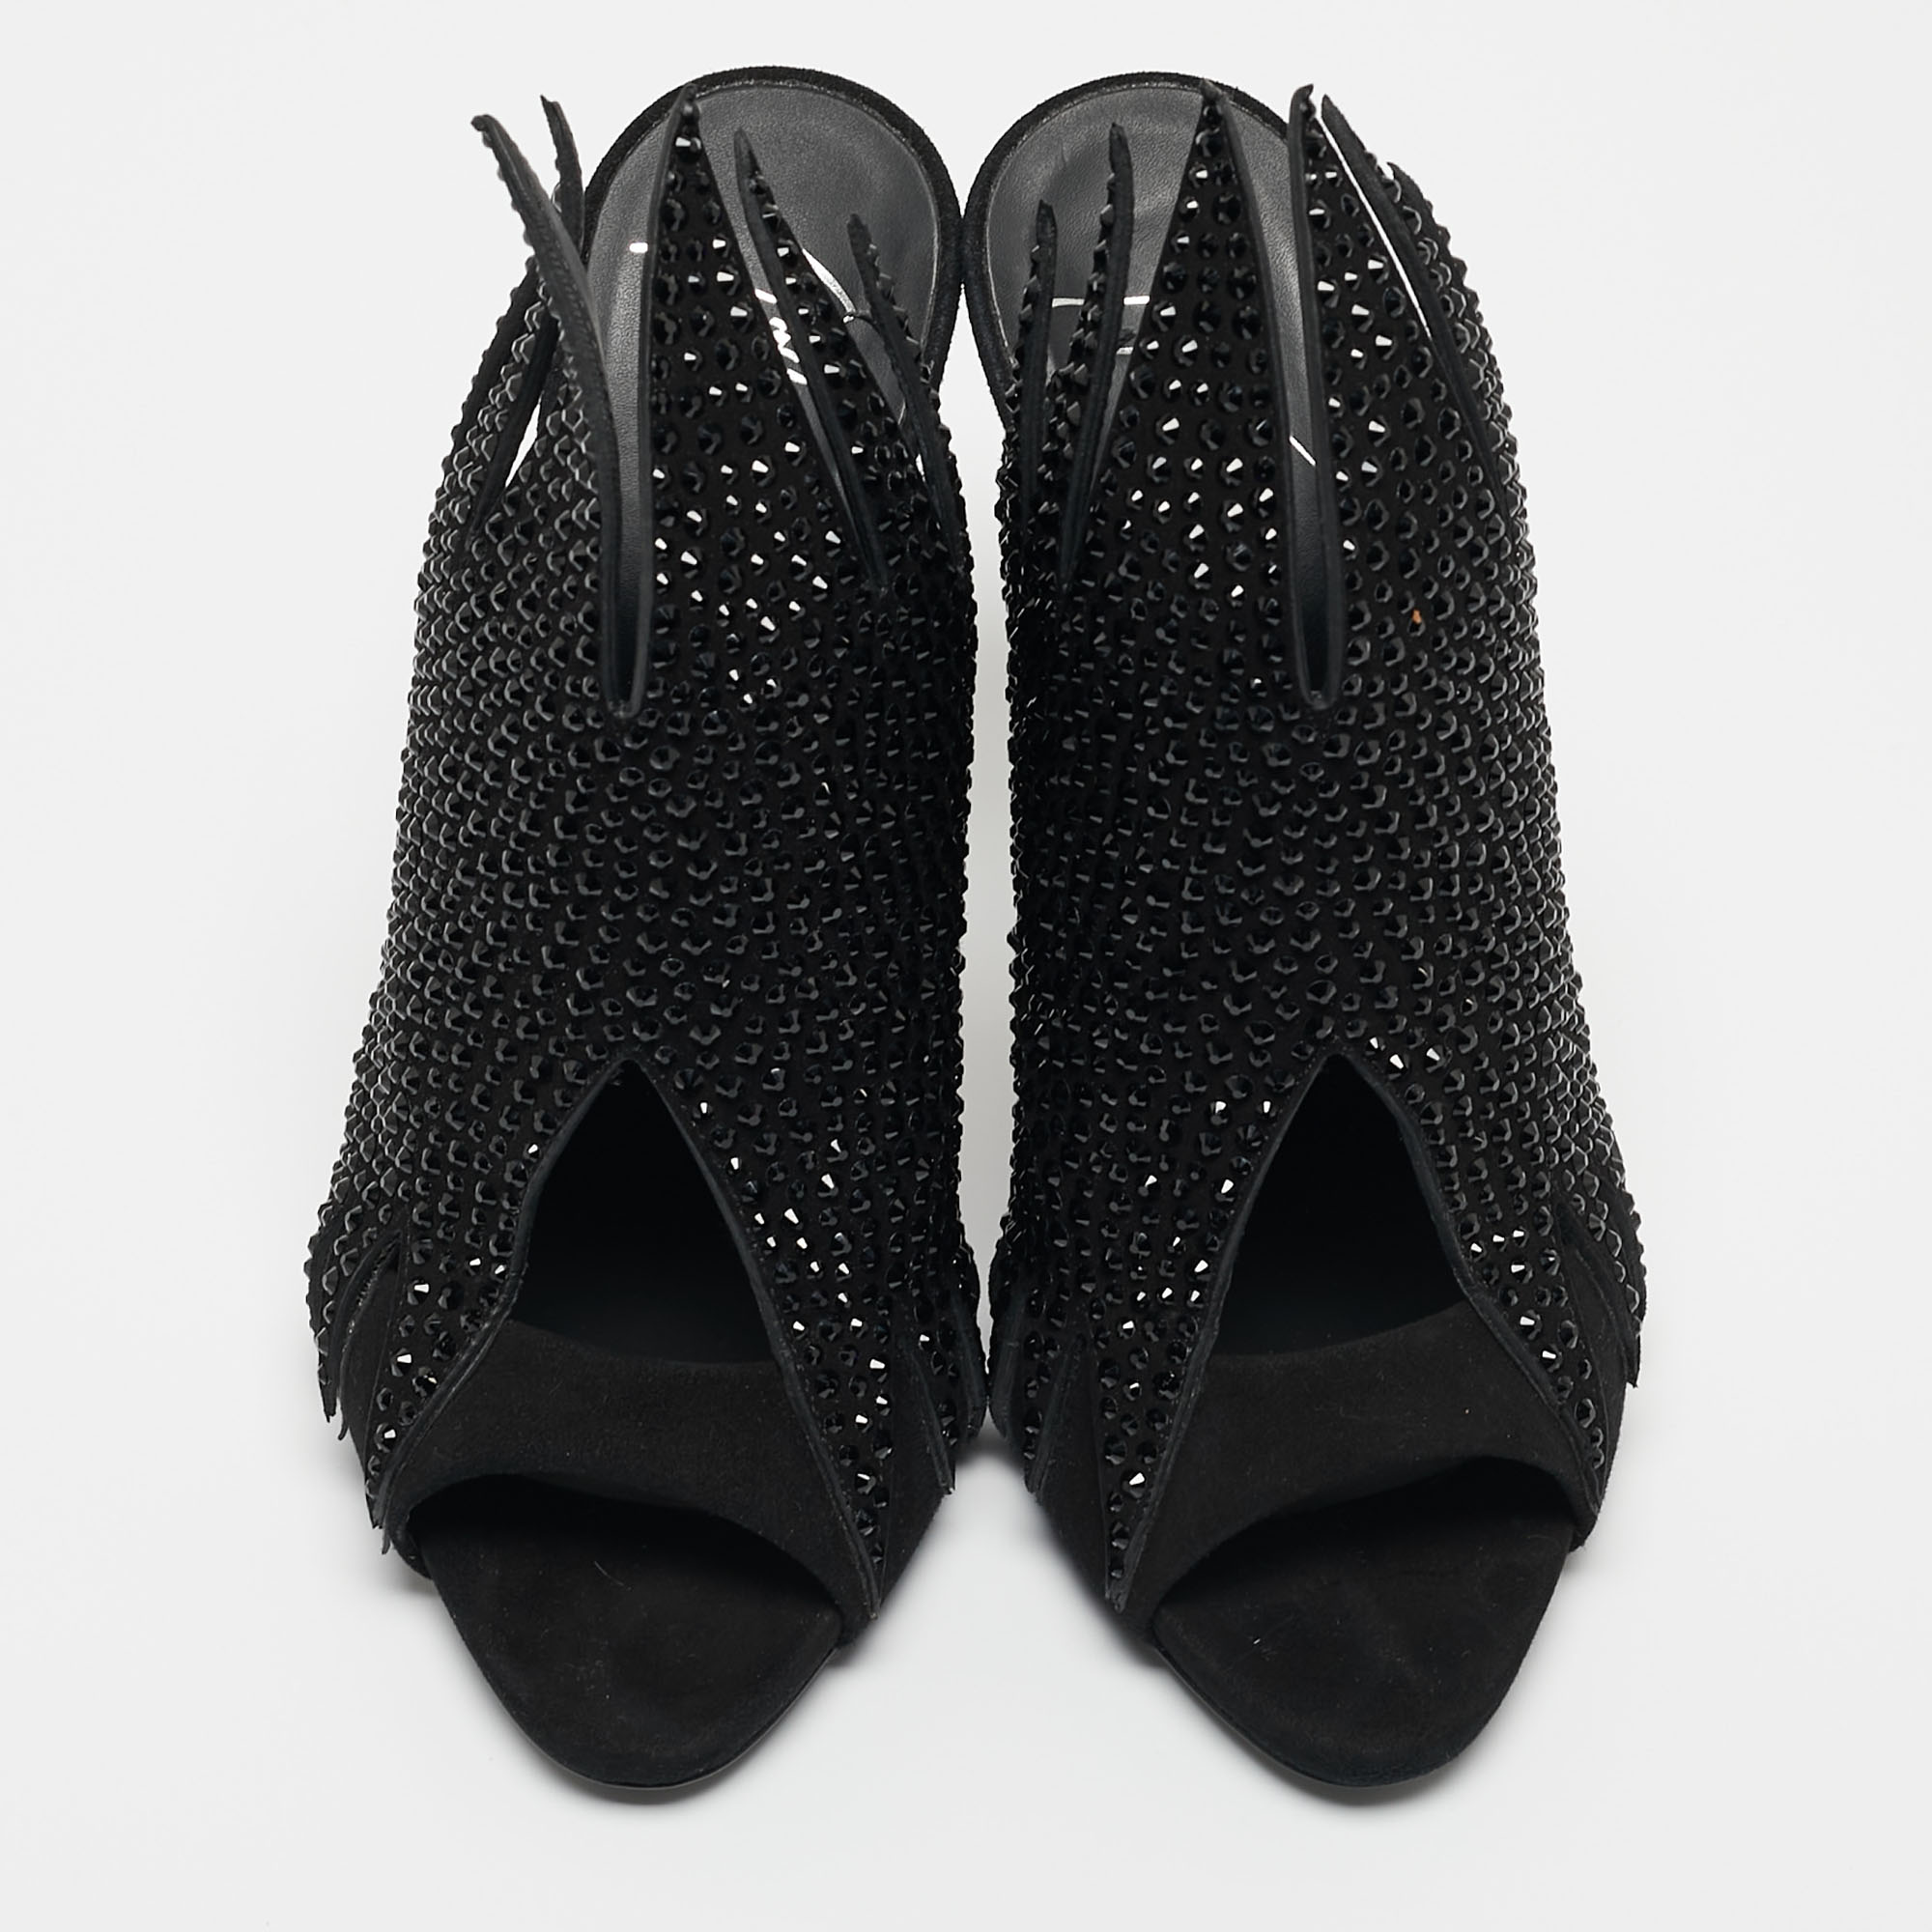 Giuseppe Zanotti Black Crystal Embellished Suede Open Toe Mules Size 38